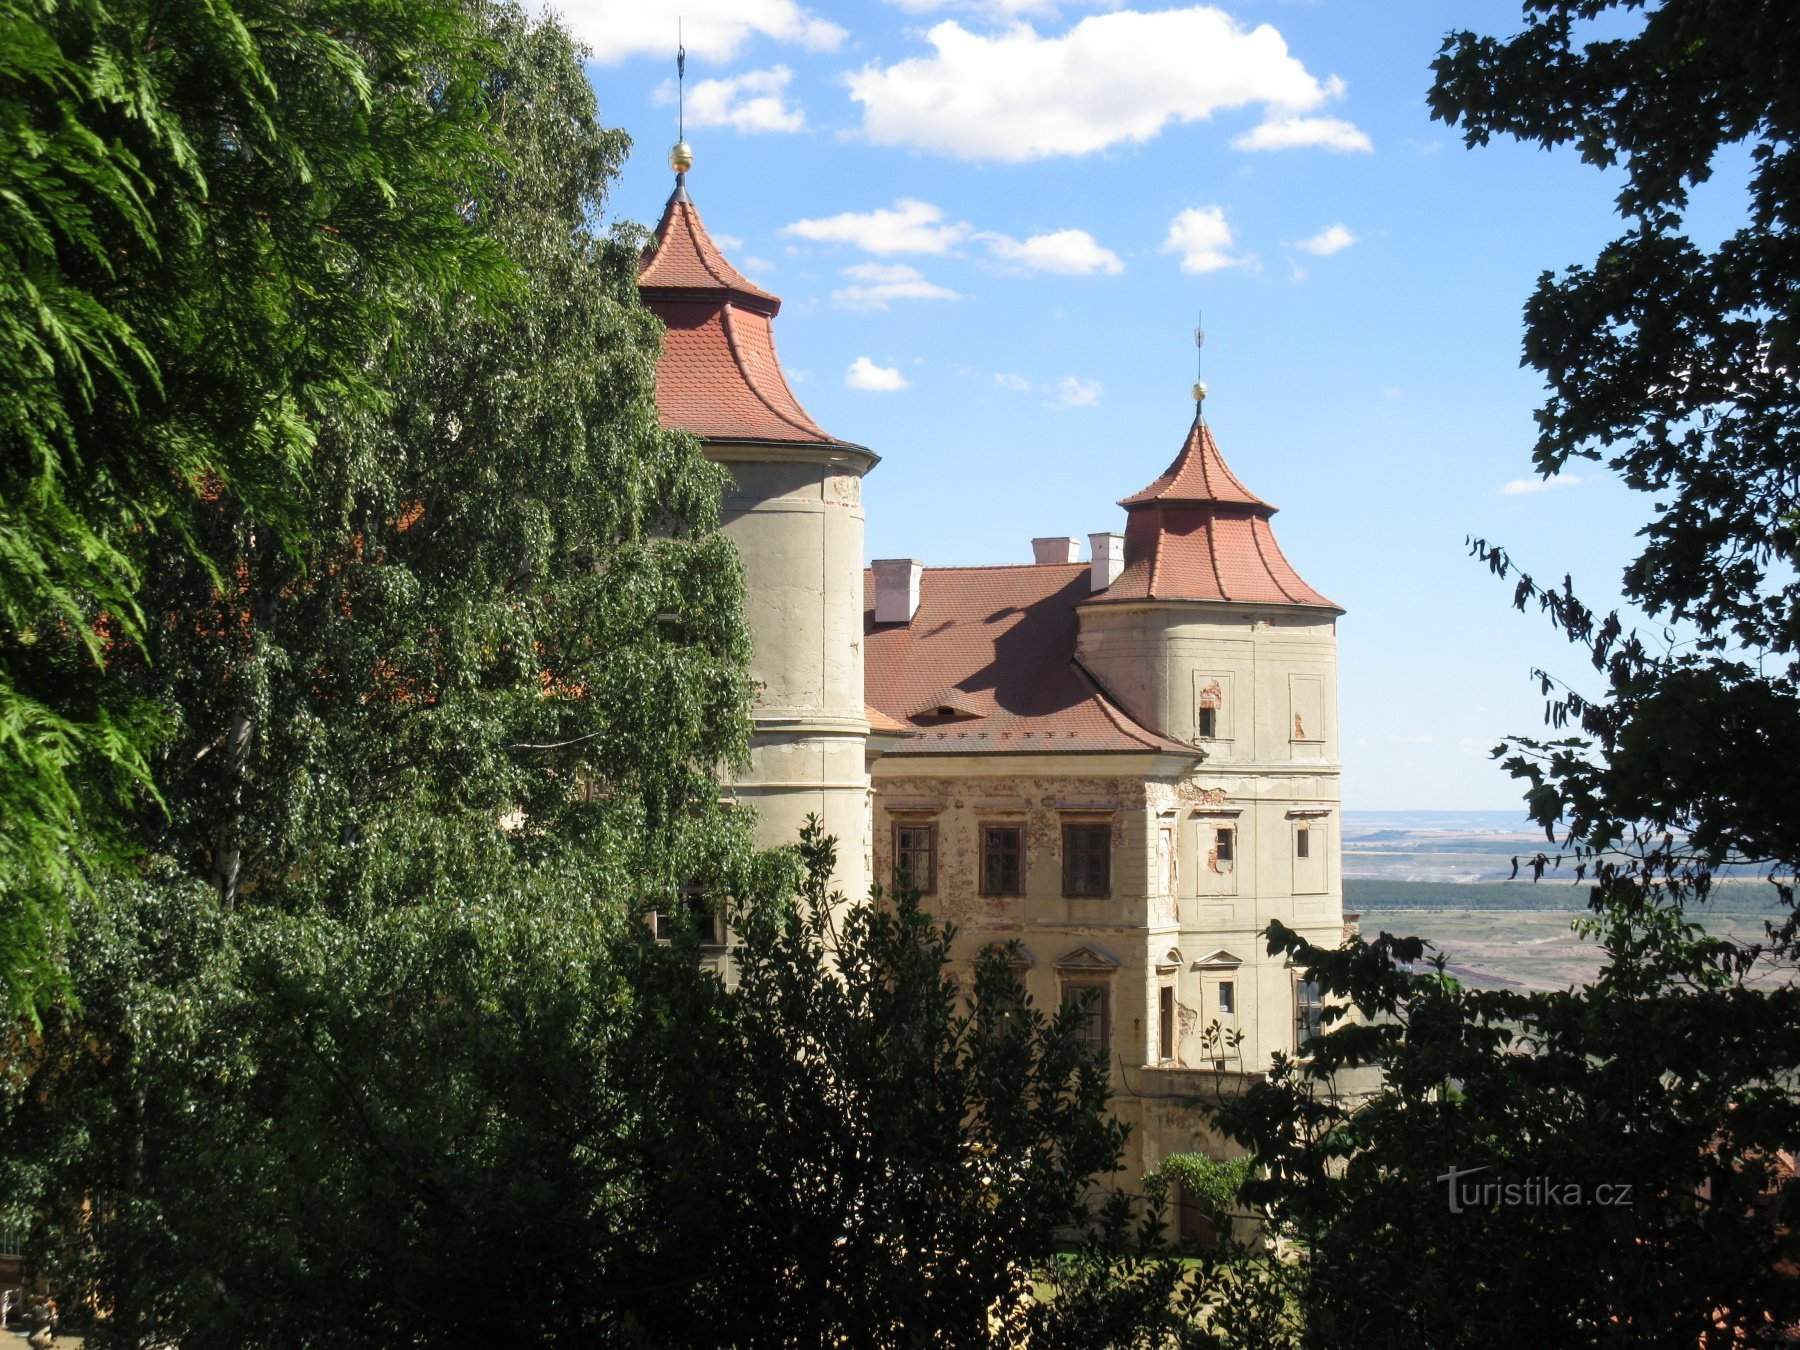 Pogled na dvorac s bočnog ulaza